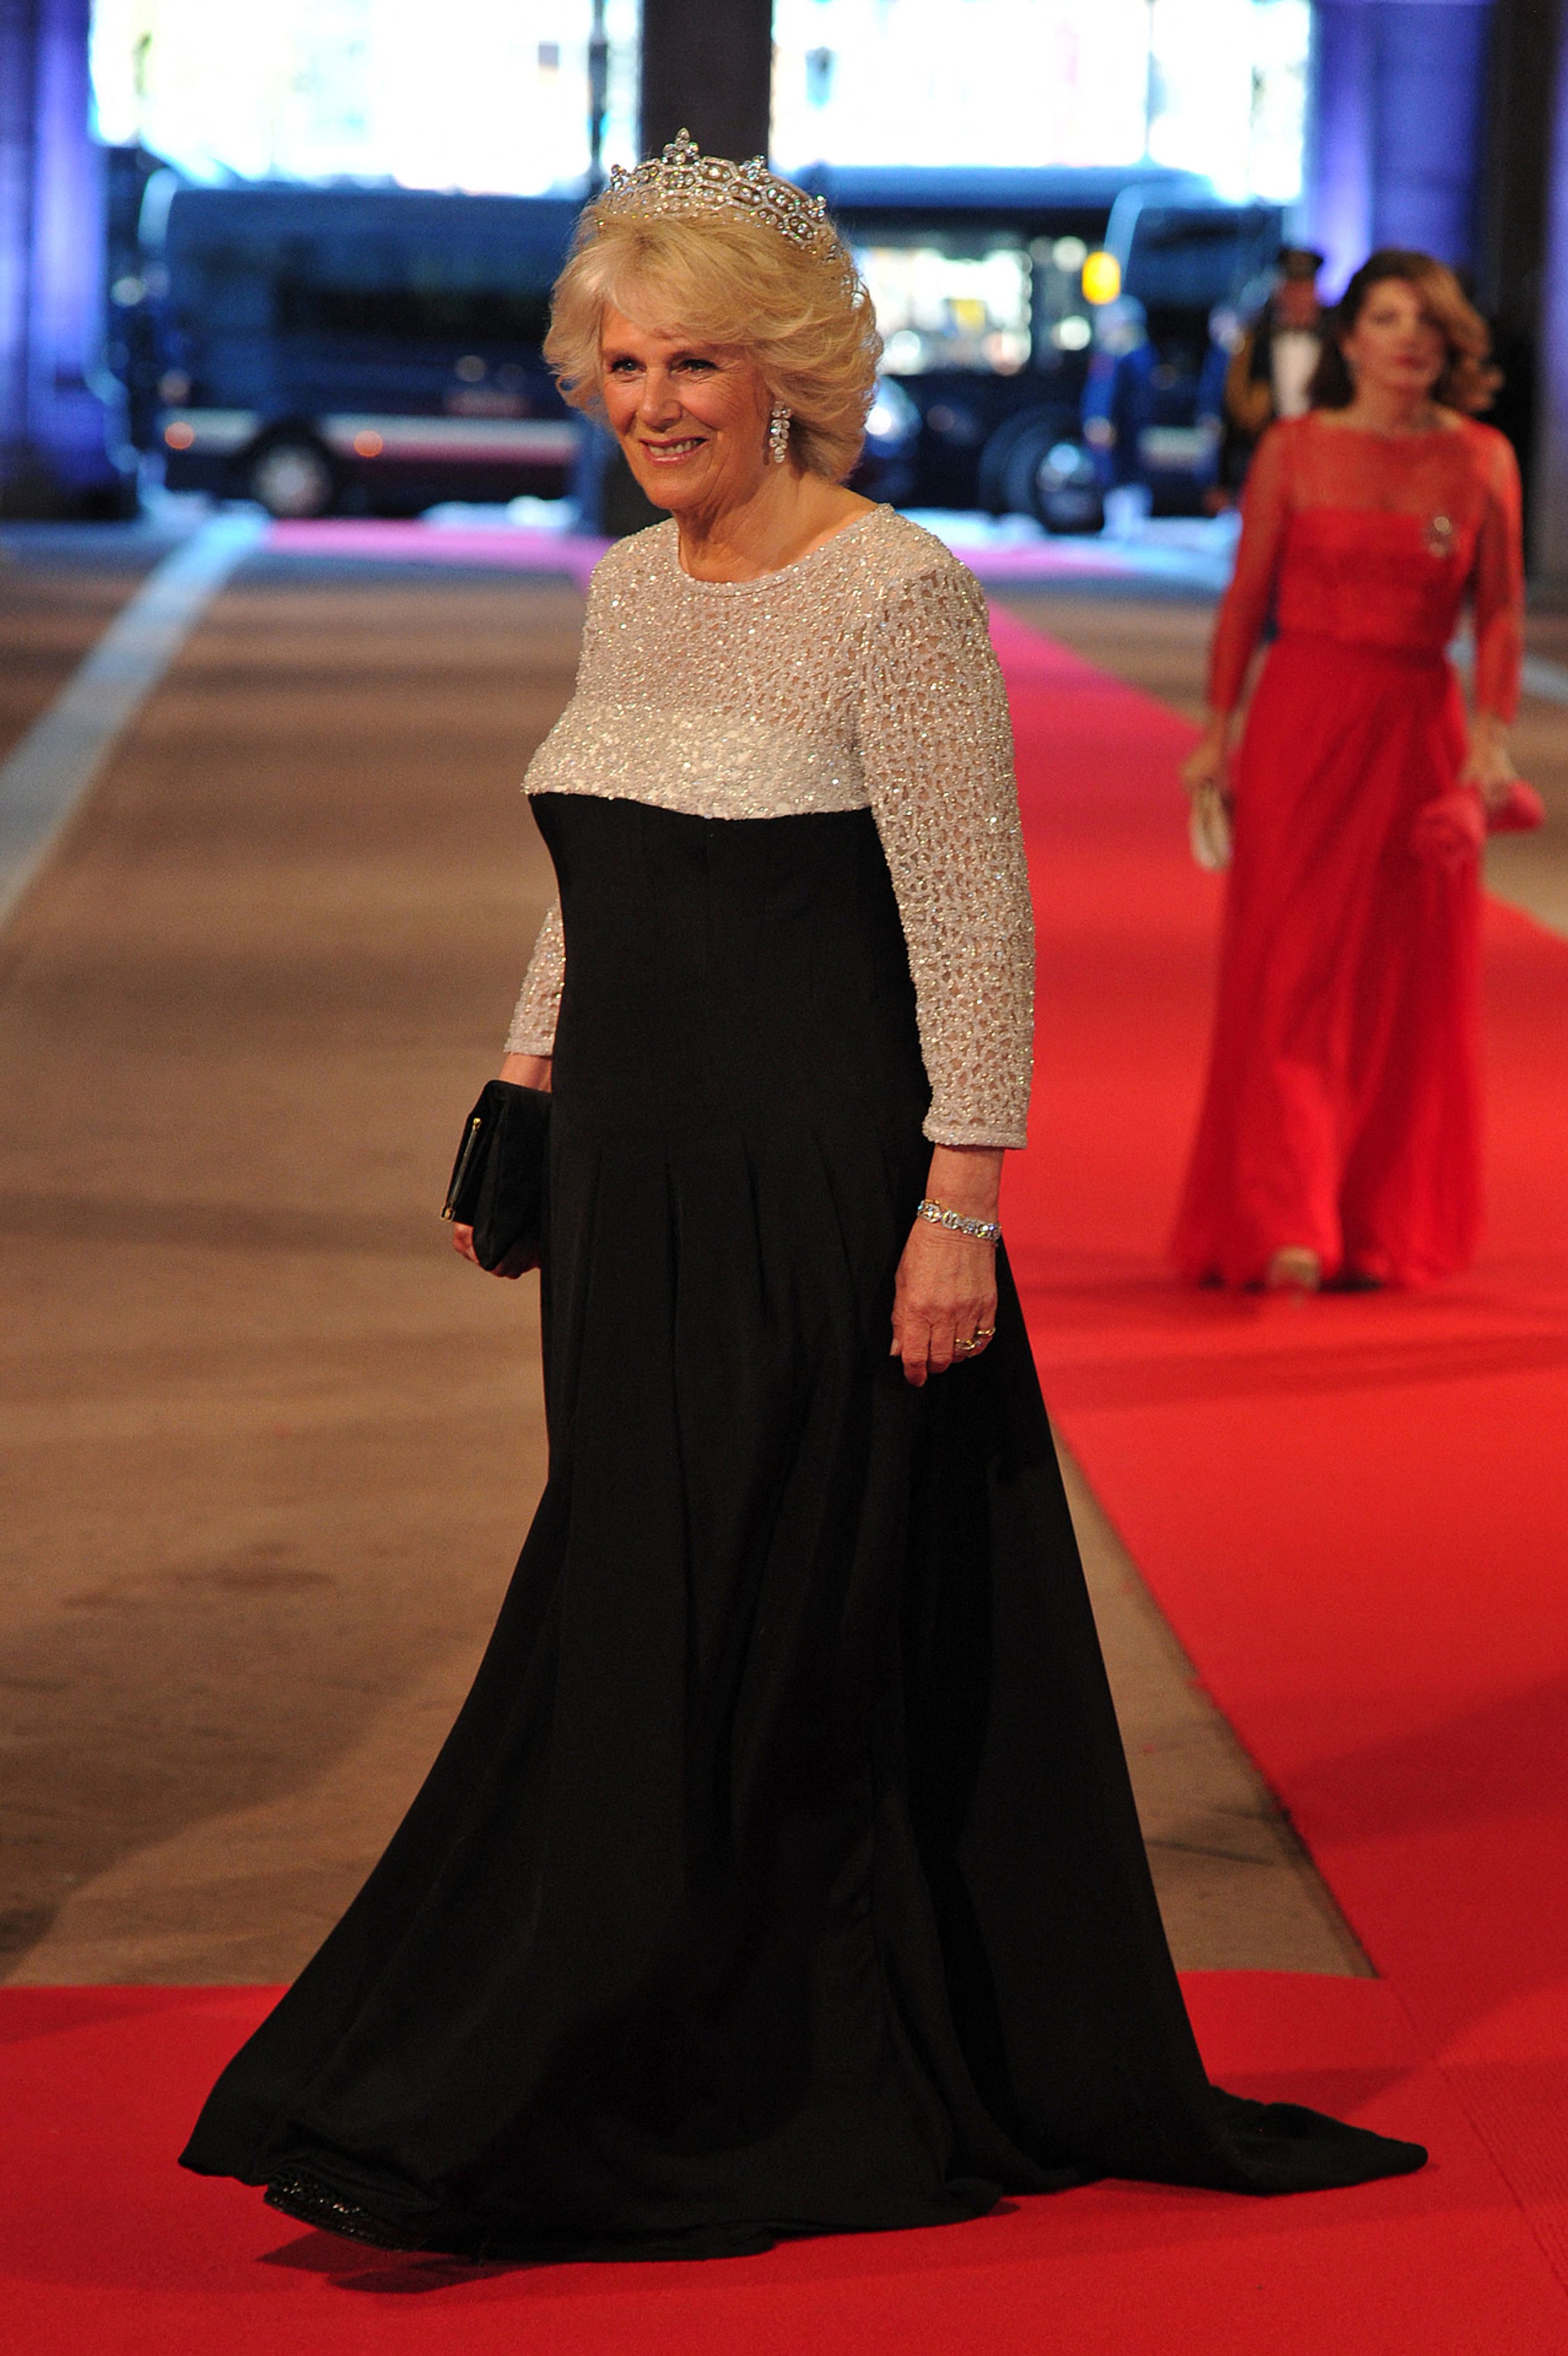 Camilla op de vooravond van de inhuldiging van koning Willem-Alexander, 2013.